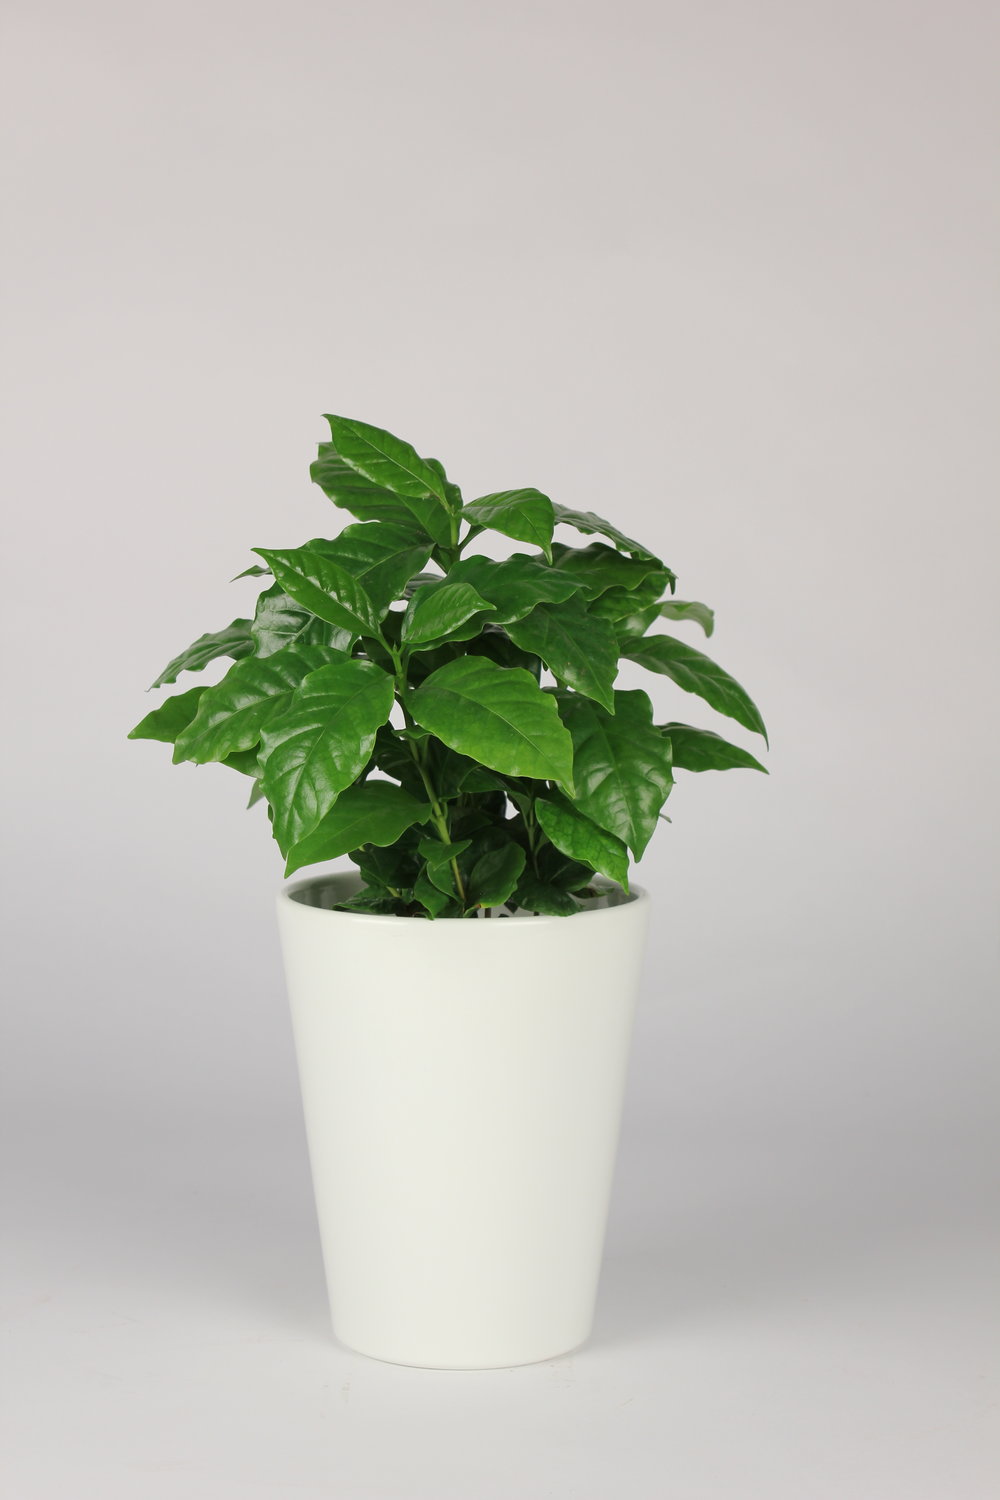 Coffee Plant (Coffea Arabica)